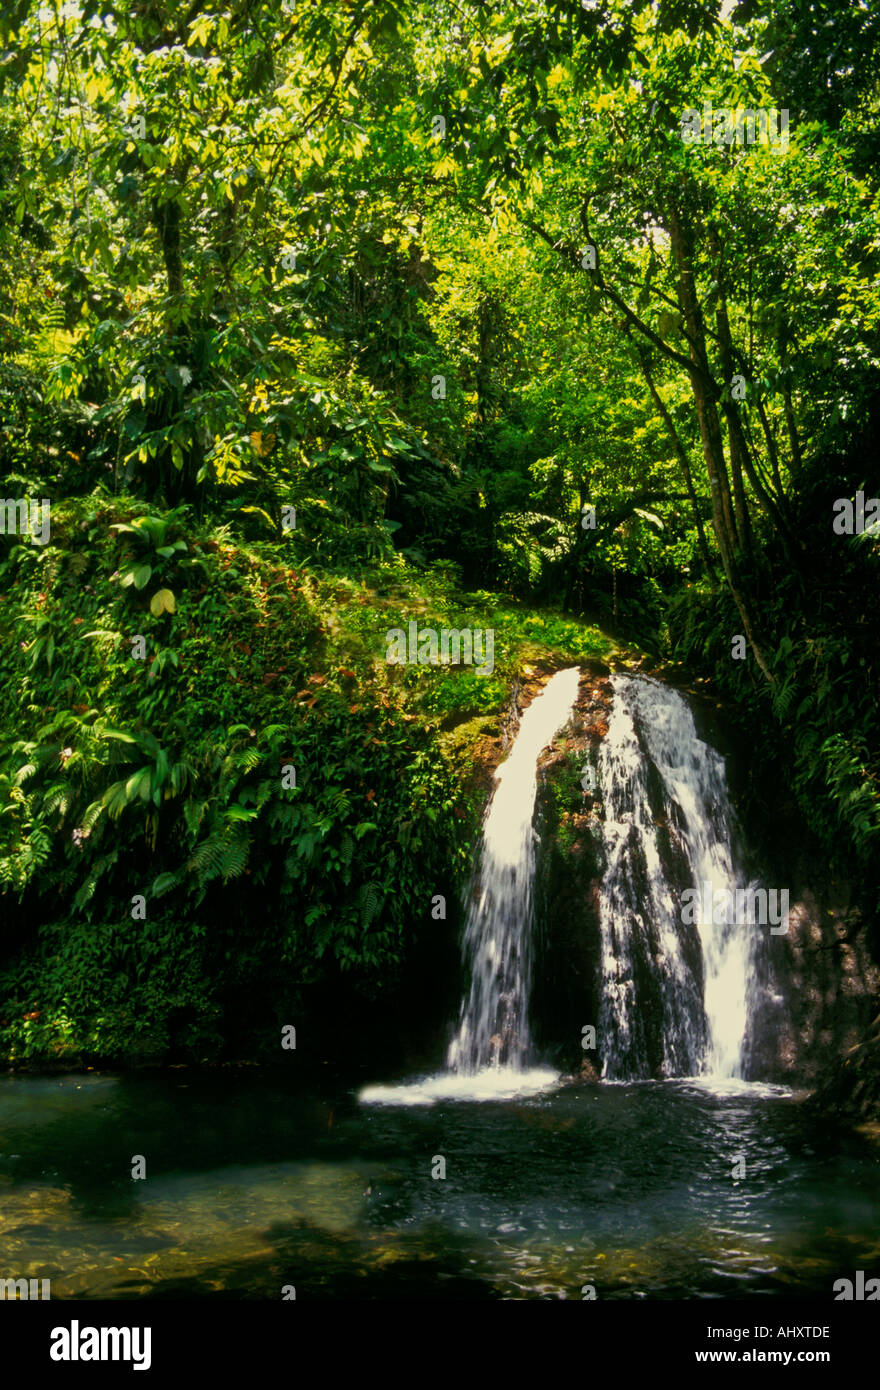 La Cascade aux Ecrevisses, Langusten, Krebse Wasserfall fällt, Wasserfall, Basse-Terre, Guadeloupe, Französische Antillen, Frankreich Stockfoto